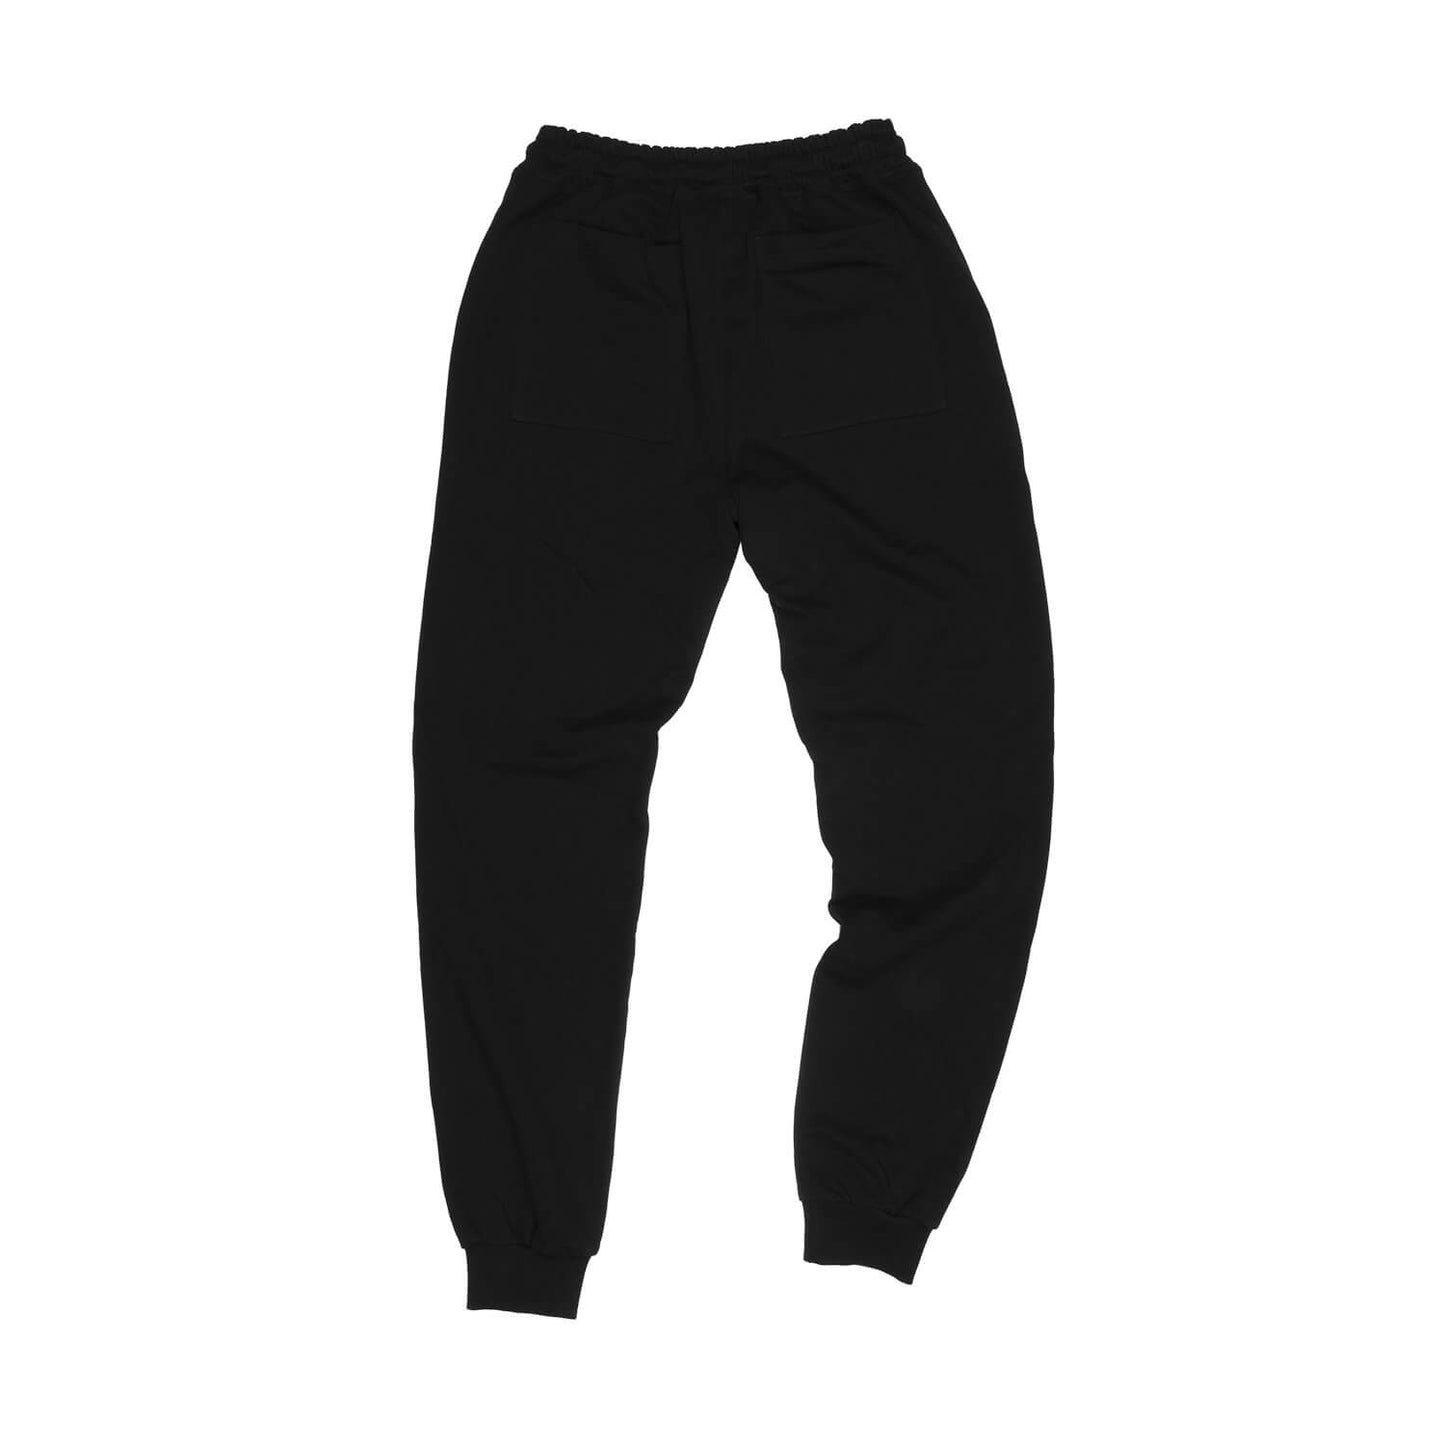 スウェットパンツ FMLPA01 Classic Lifestyle Pants - Black [ユニセックス]